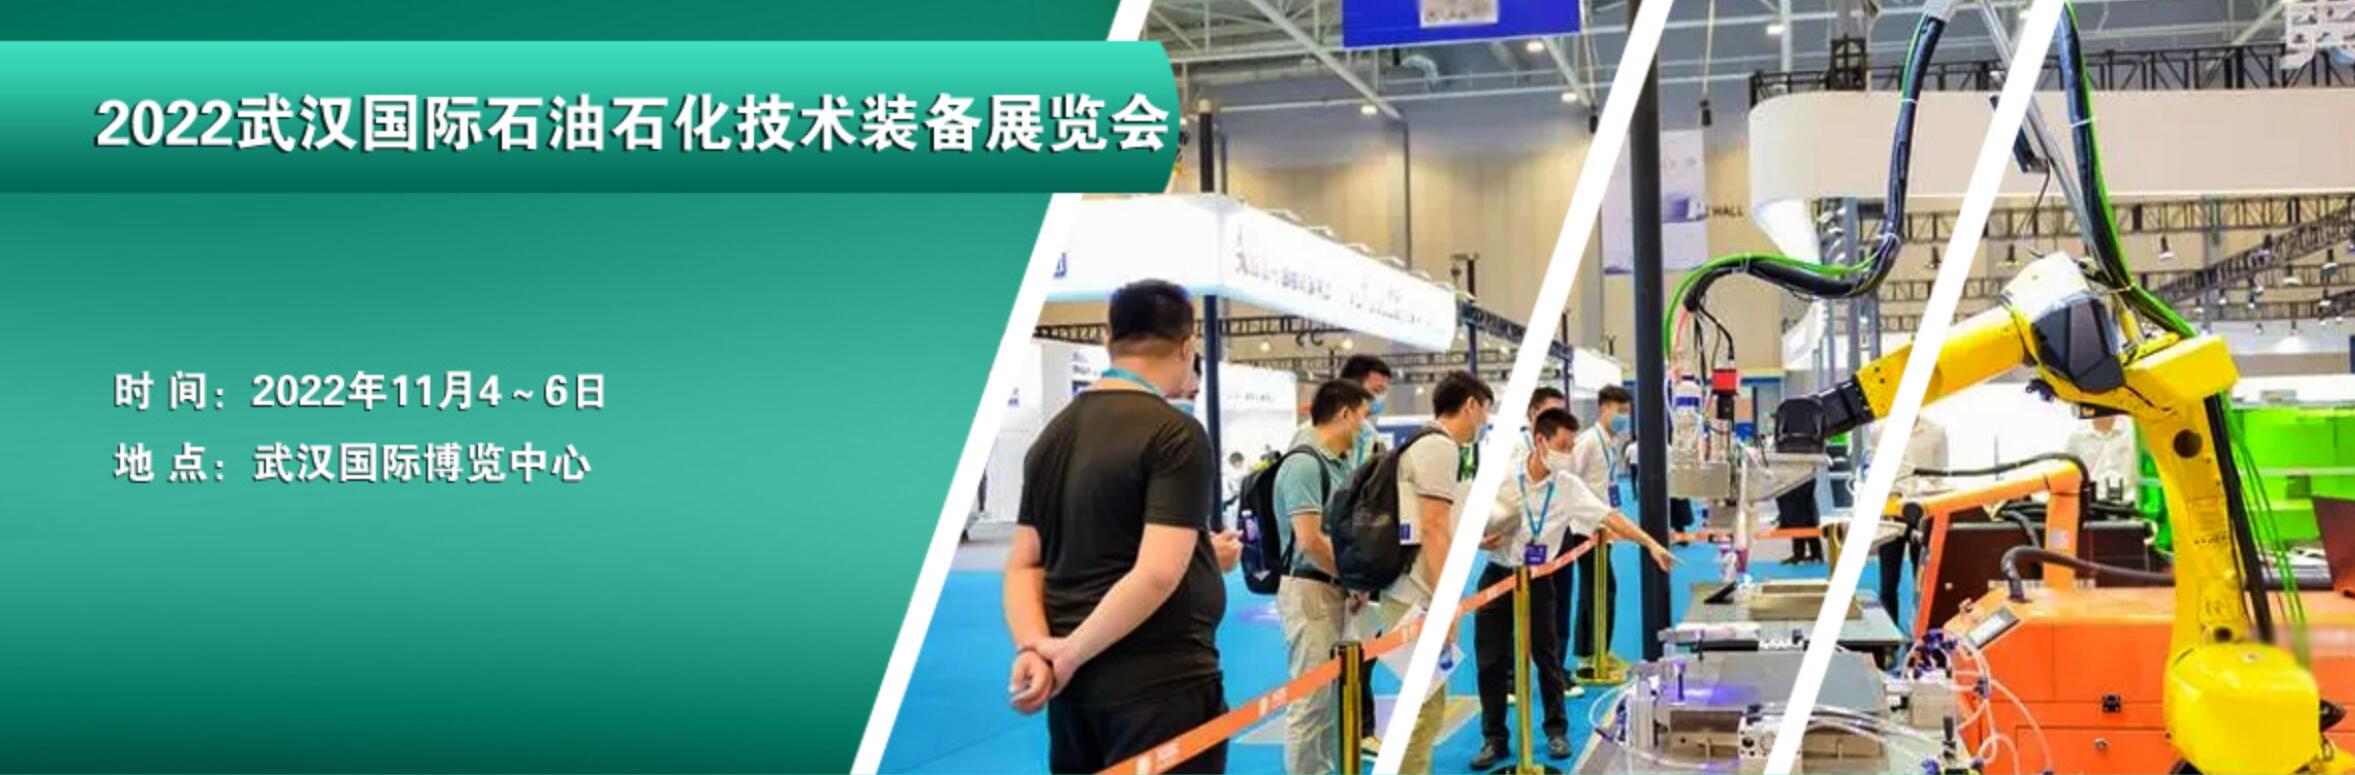 2022武漢國際石油石化技術裝備展覽會